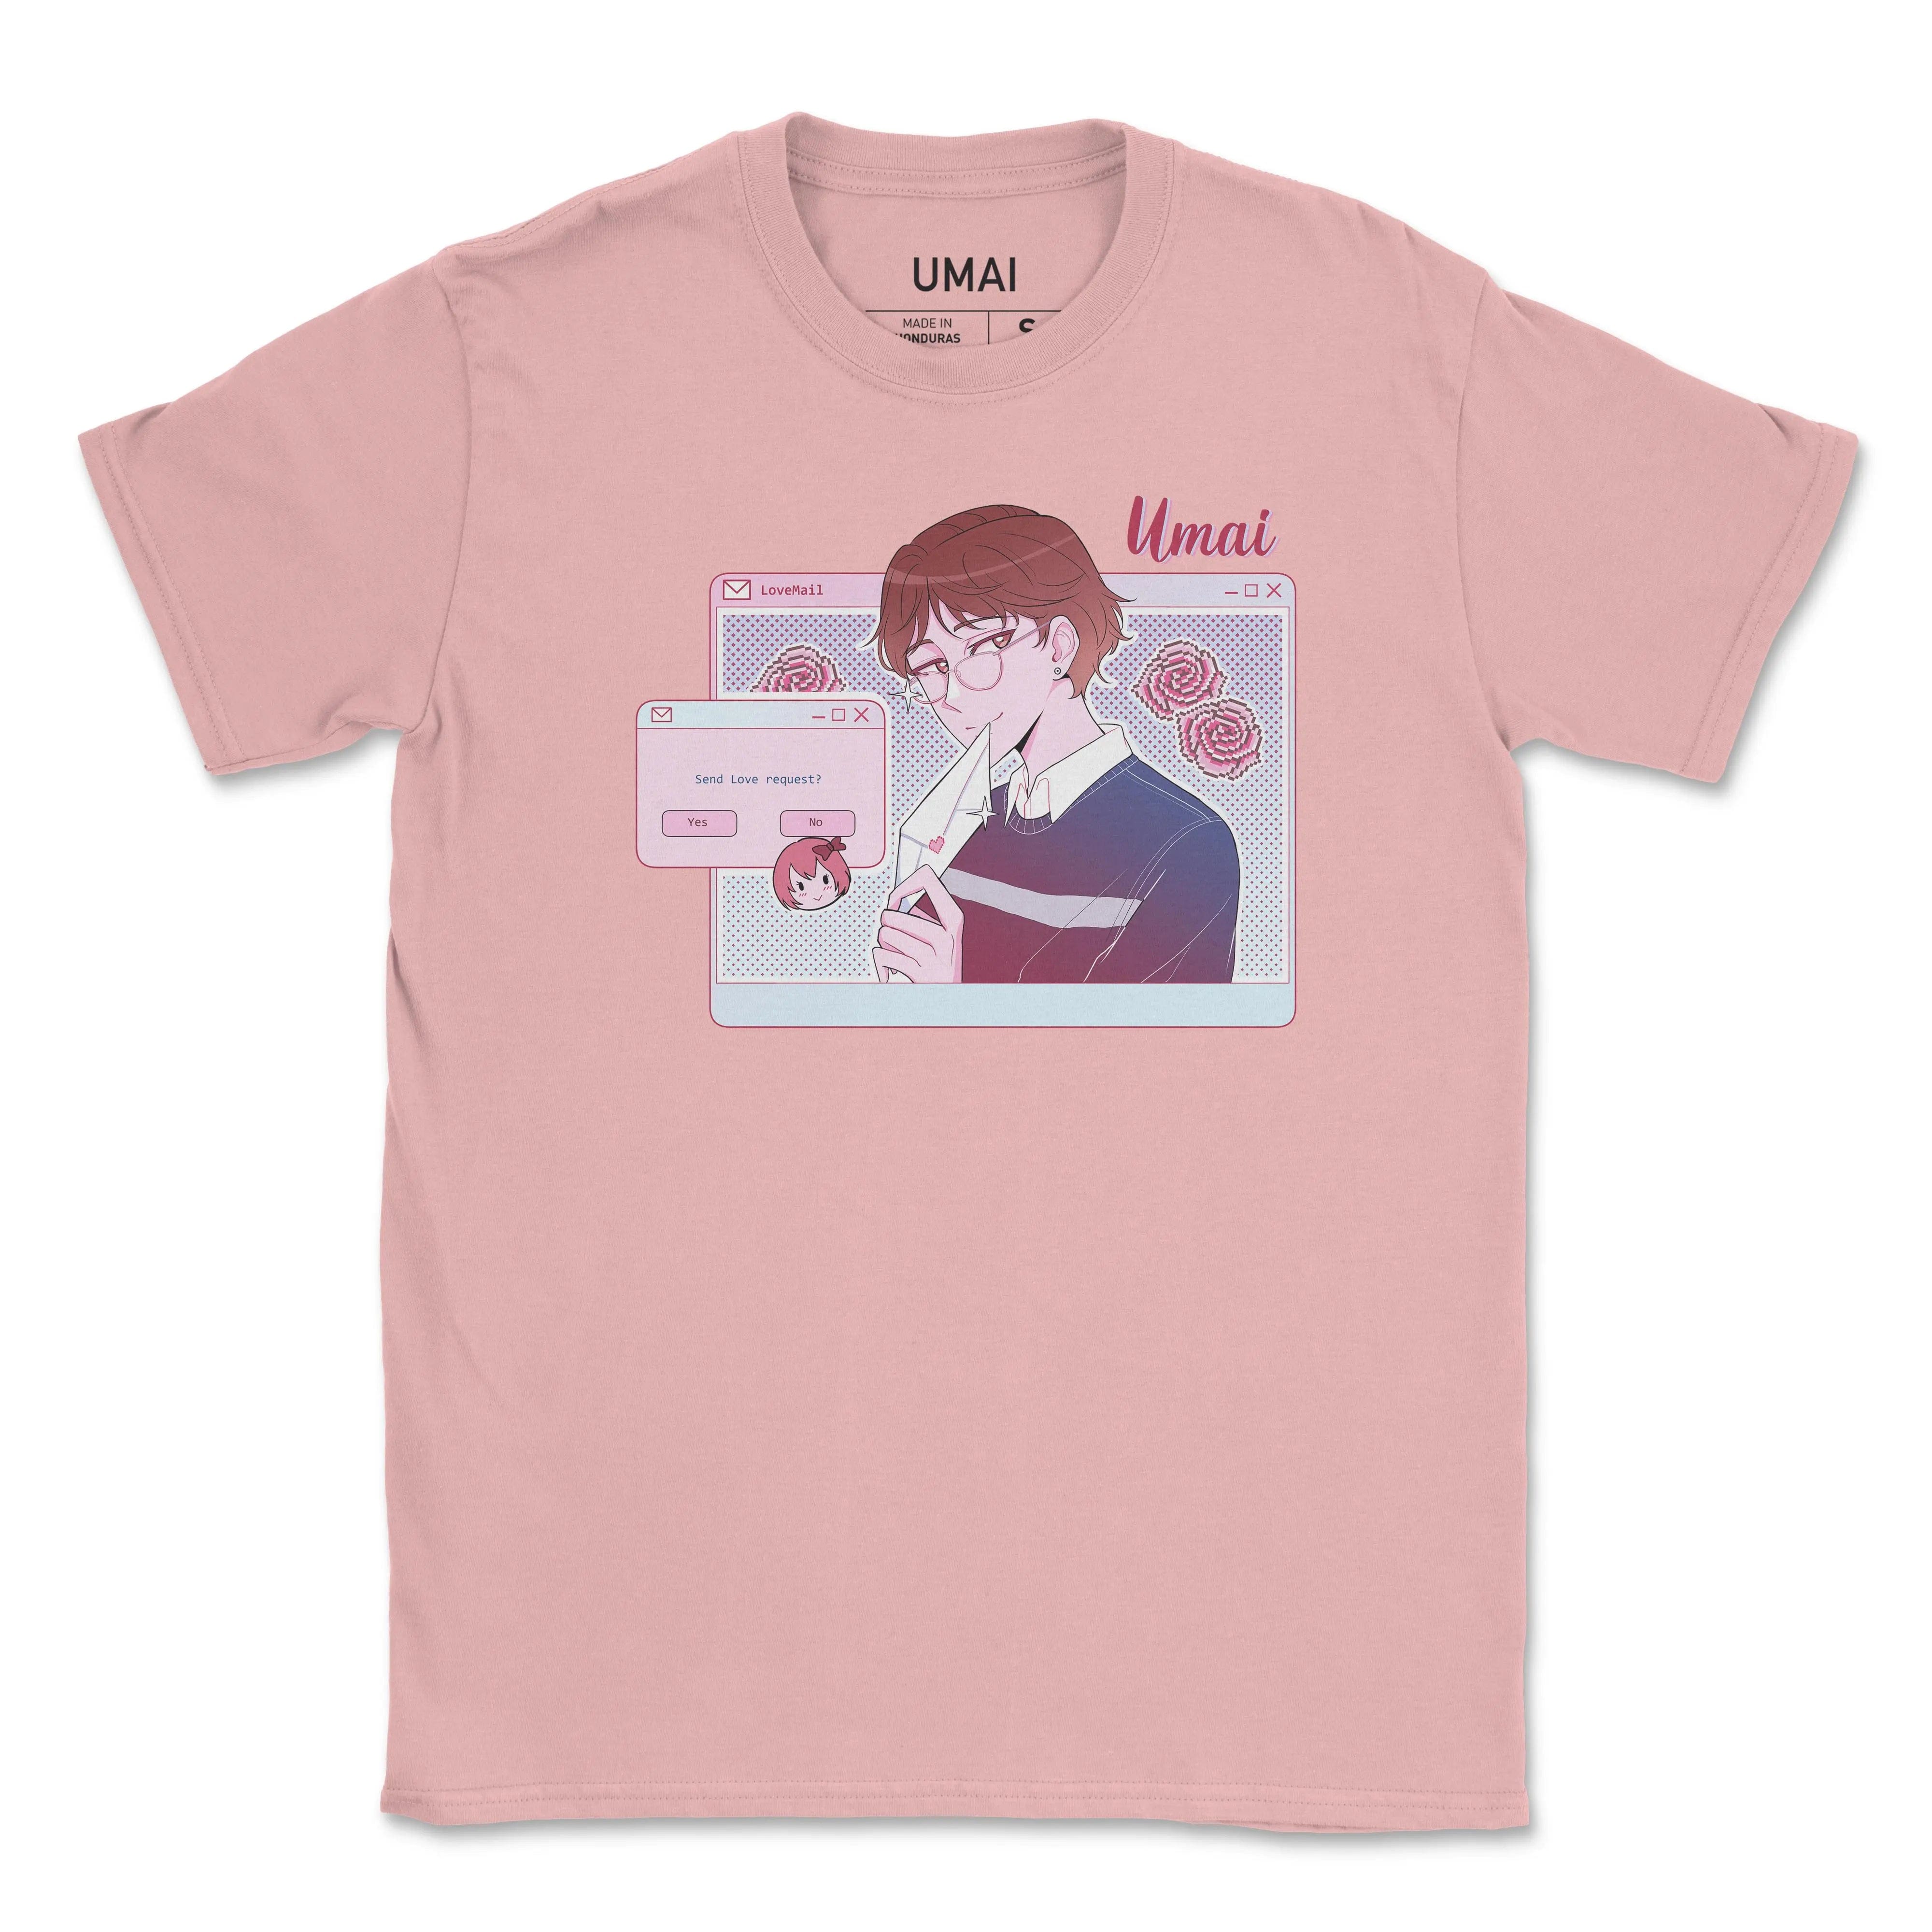 Exclusivité février 2021 (garçon) • T-shirt